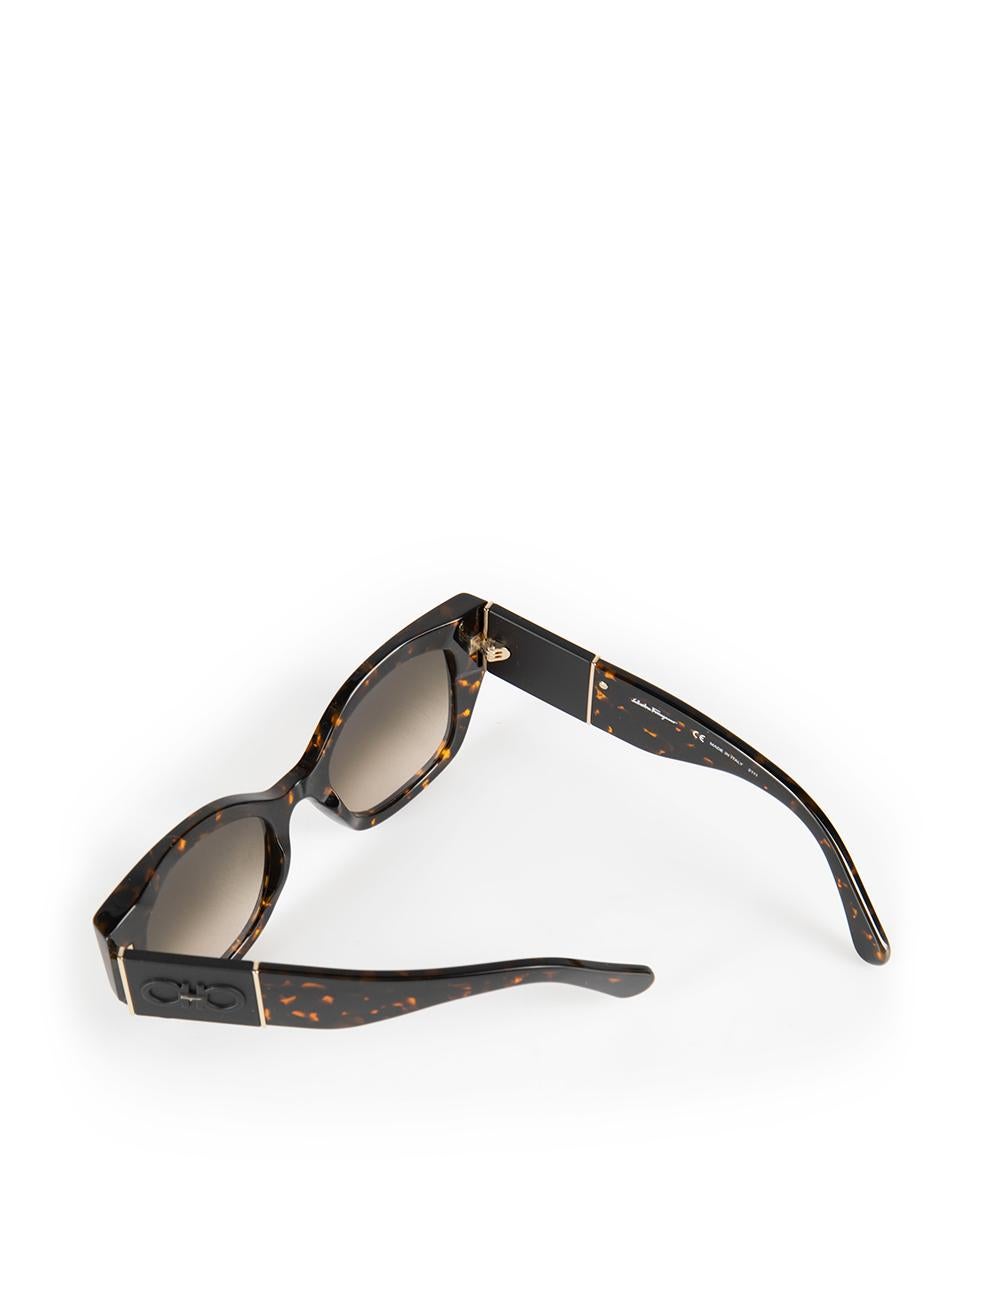 Salvatore Ferragamo Vintage Tortoise Square Sunglasses 2